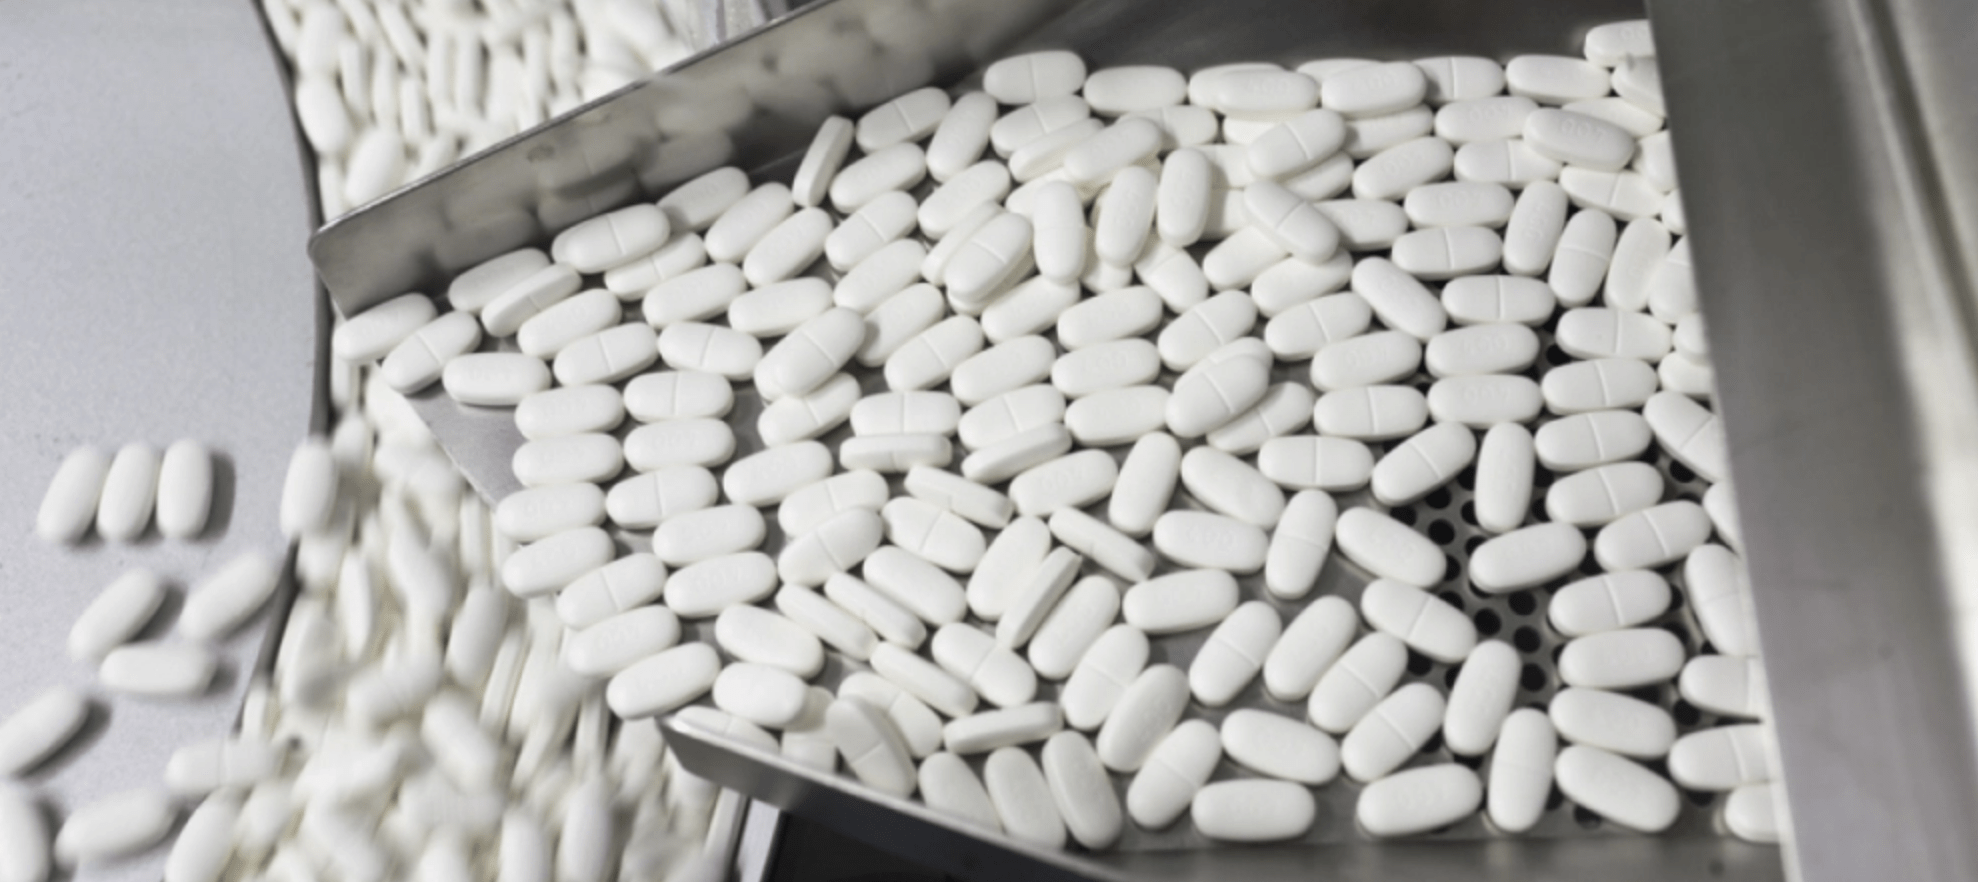 Suborno aos médicos para prescrever seus medicamentos: acusações sérias para a Novartis